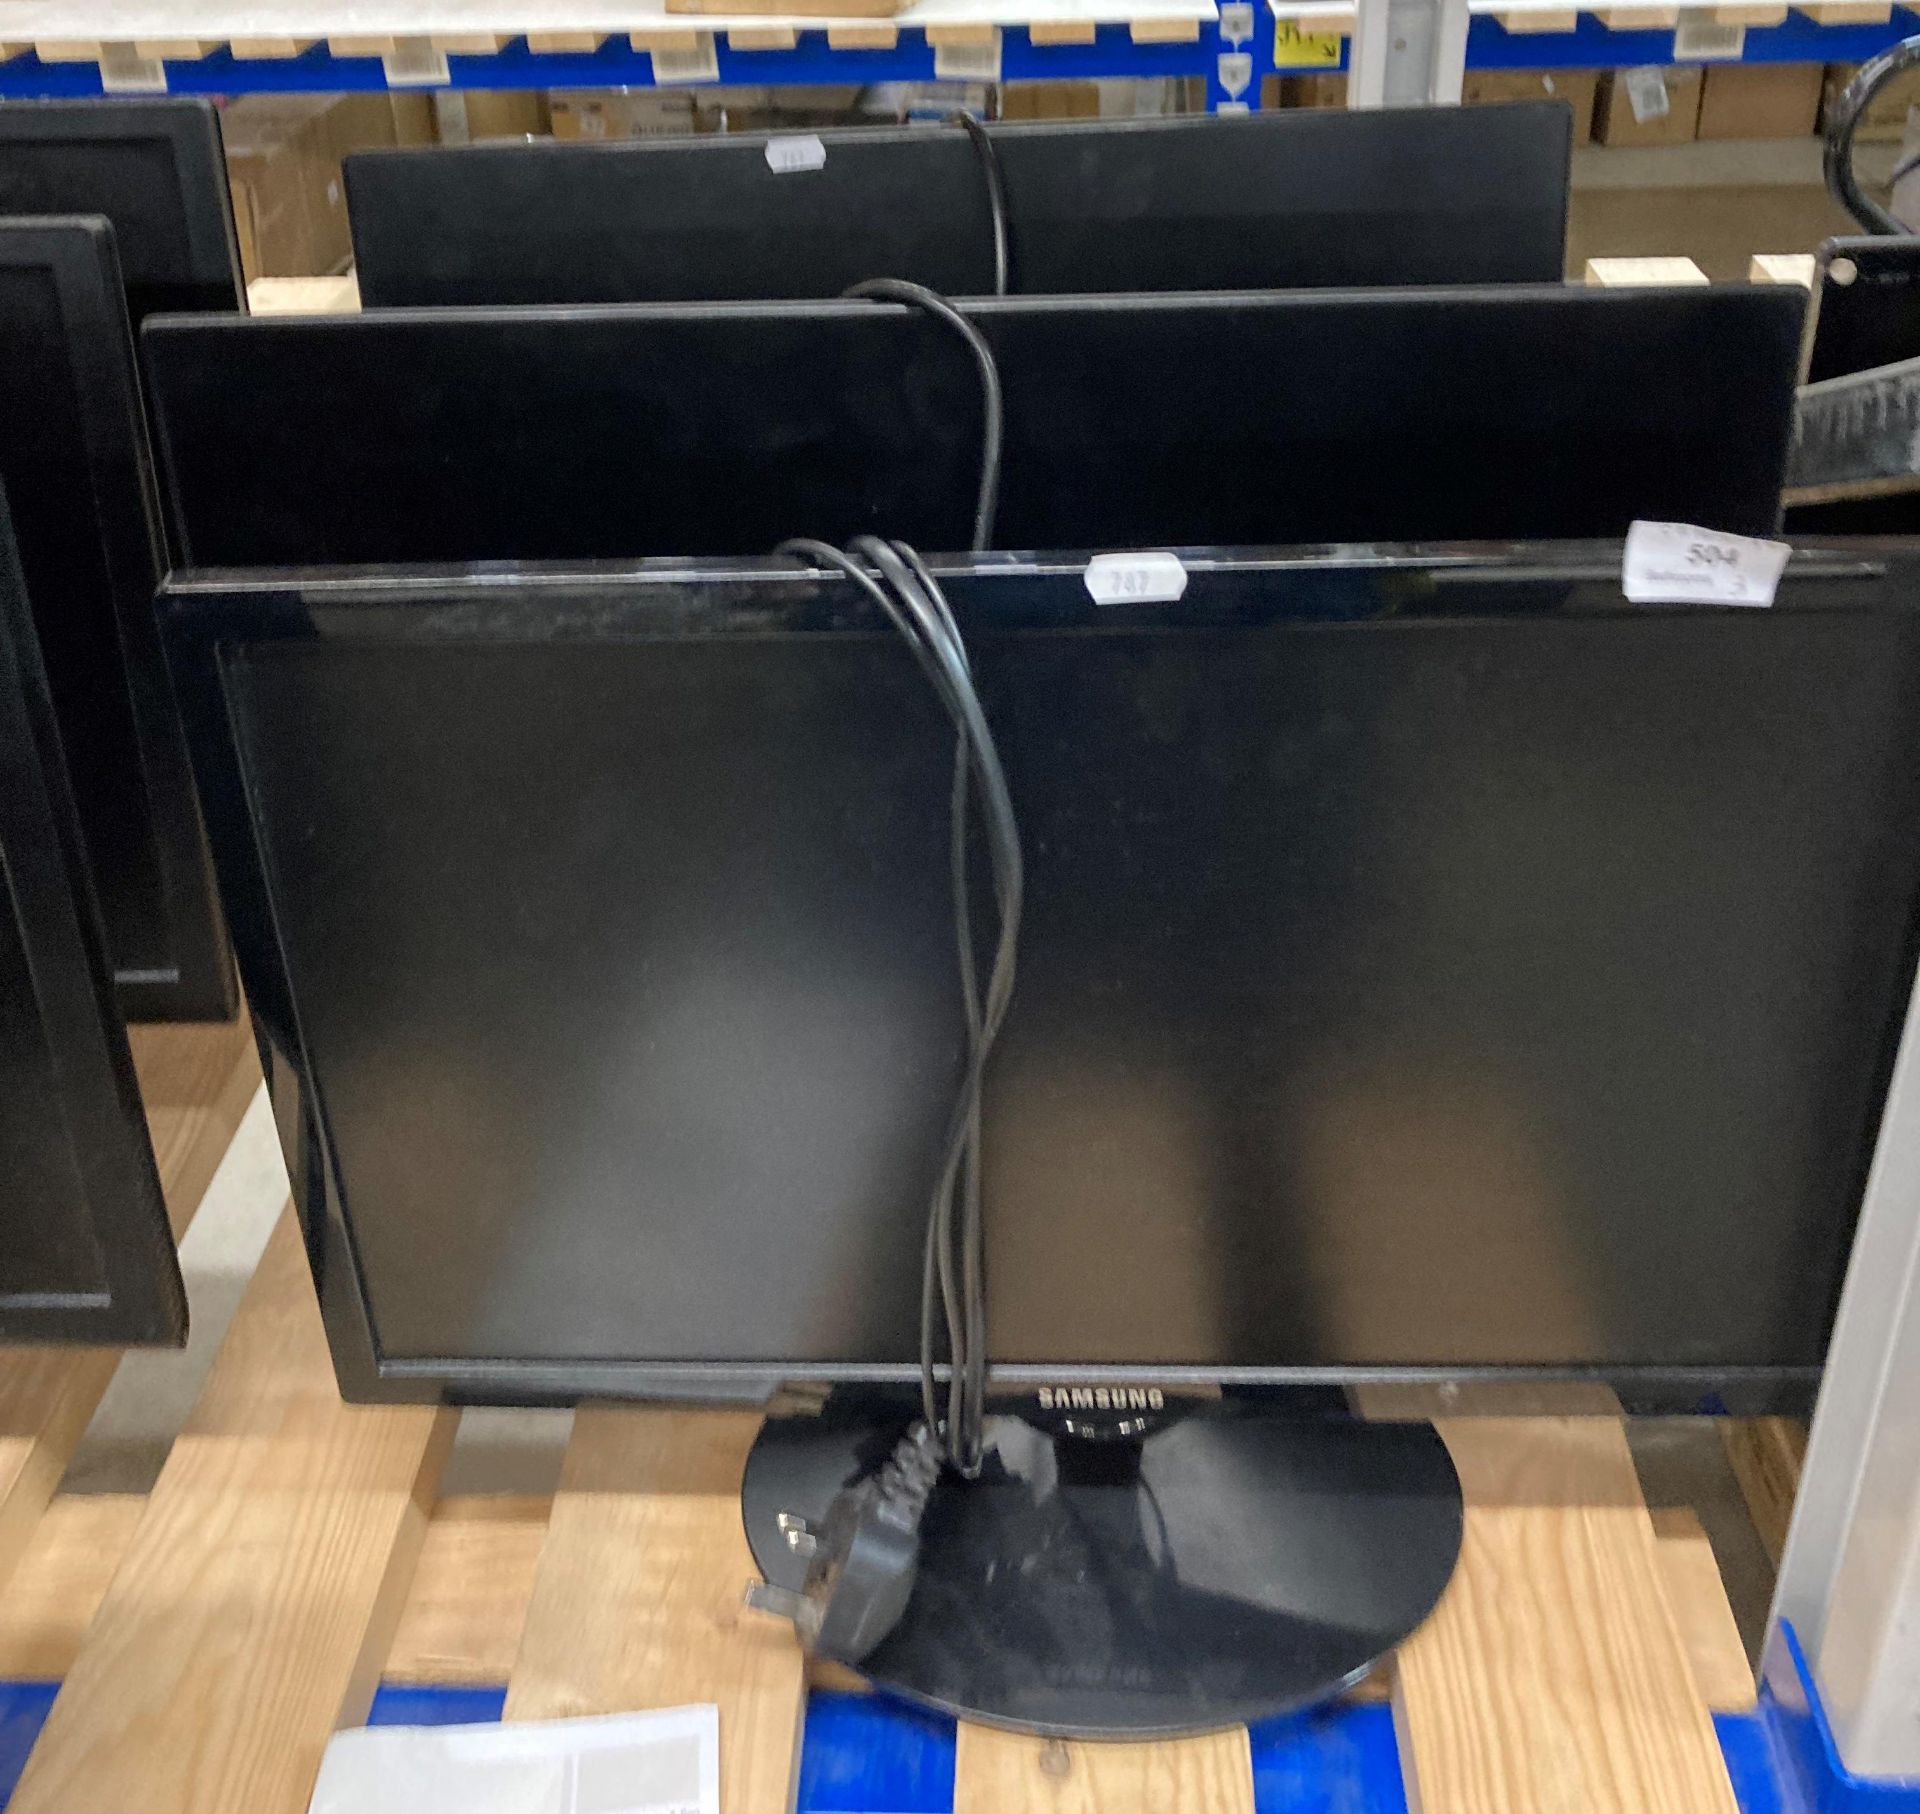 2 x Pixl and 1 x Samsung computer monitors (3) (saleroom location: L10)